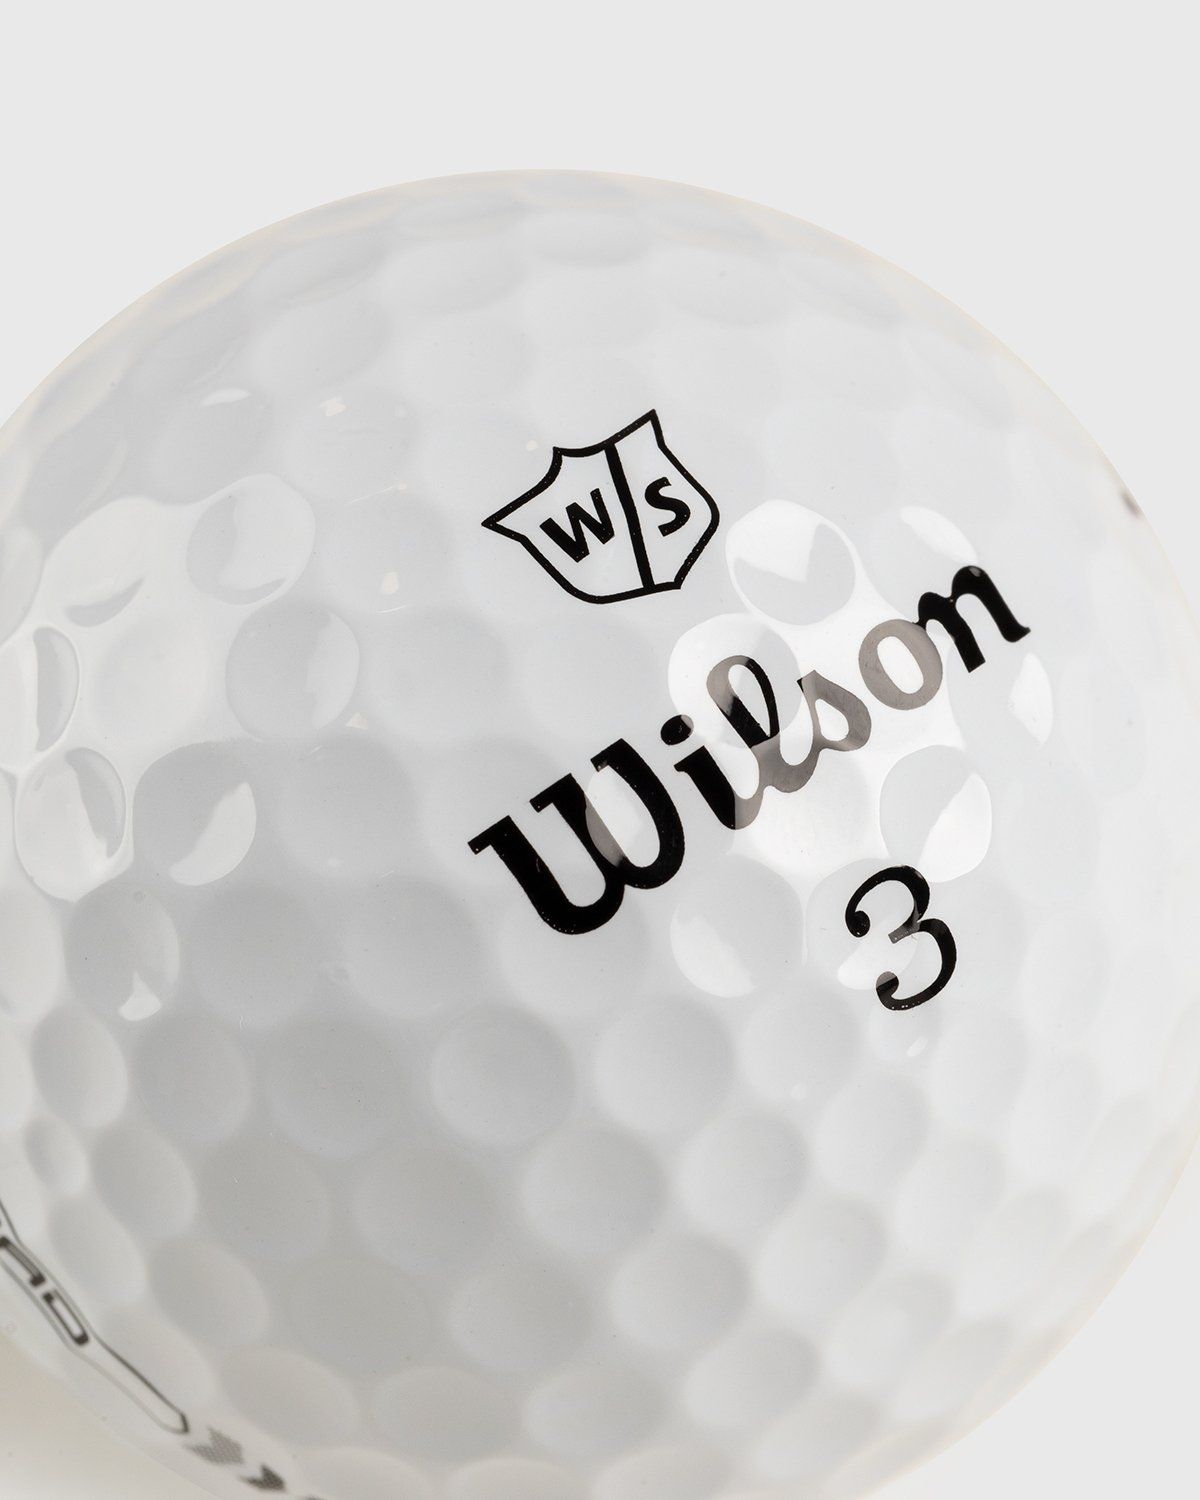 Wilson x Highsnobiety – HS Sports 12 Golf Balls - Accessories - White - Image 4